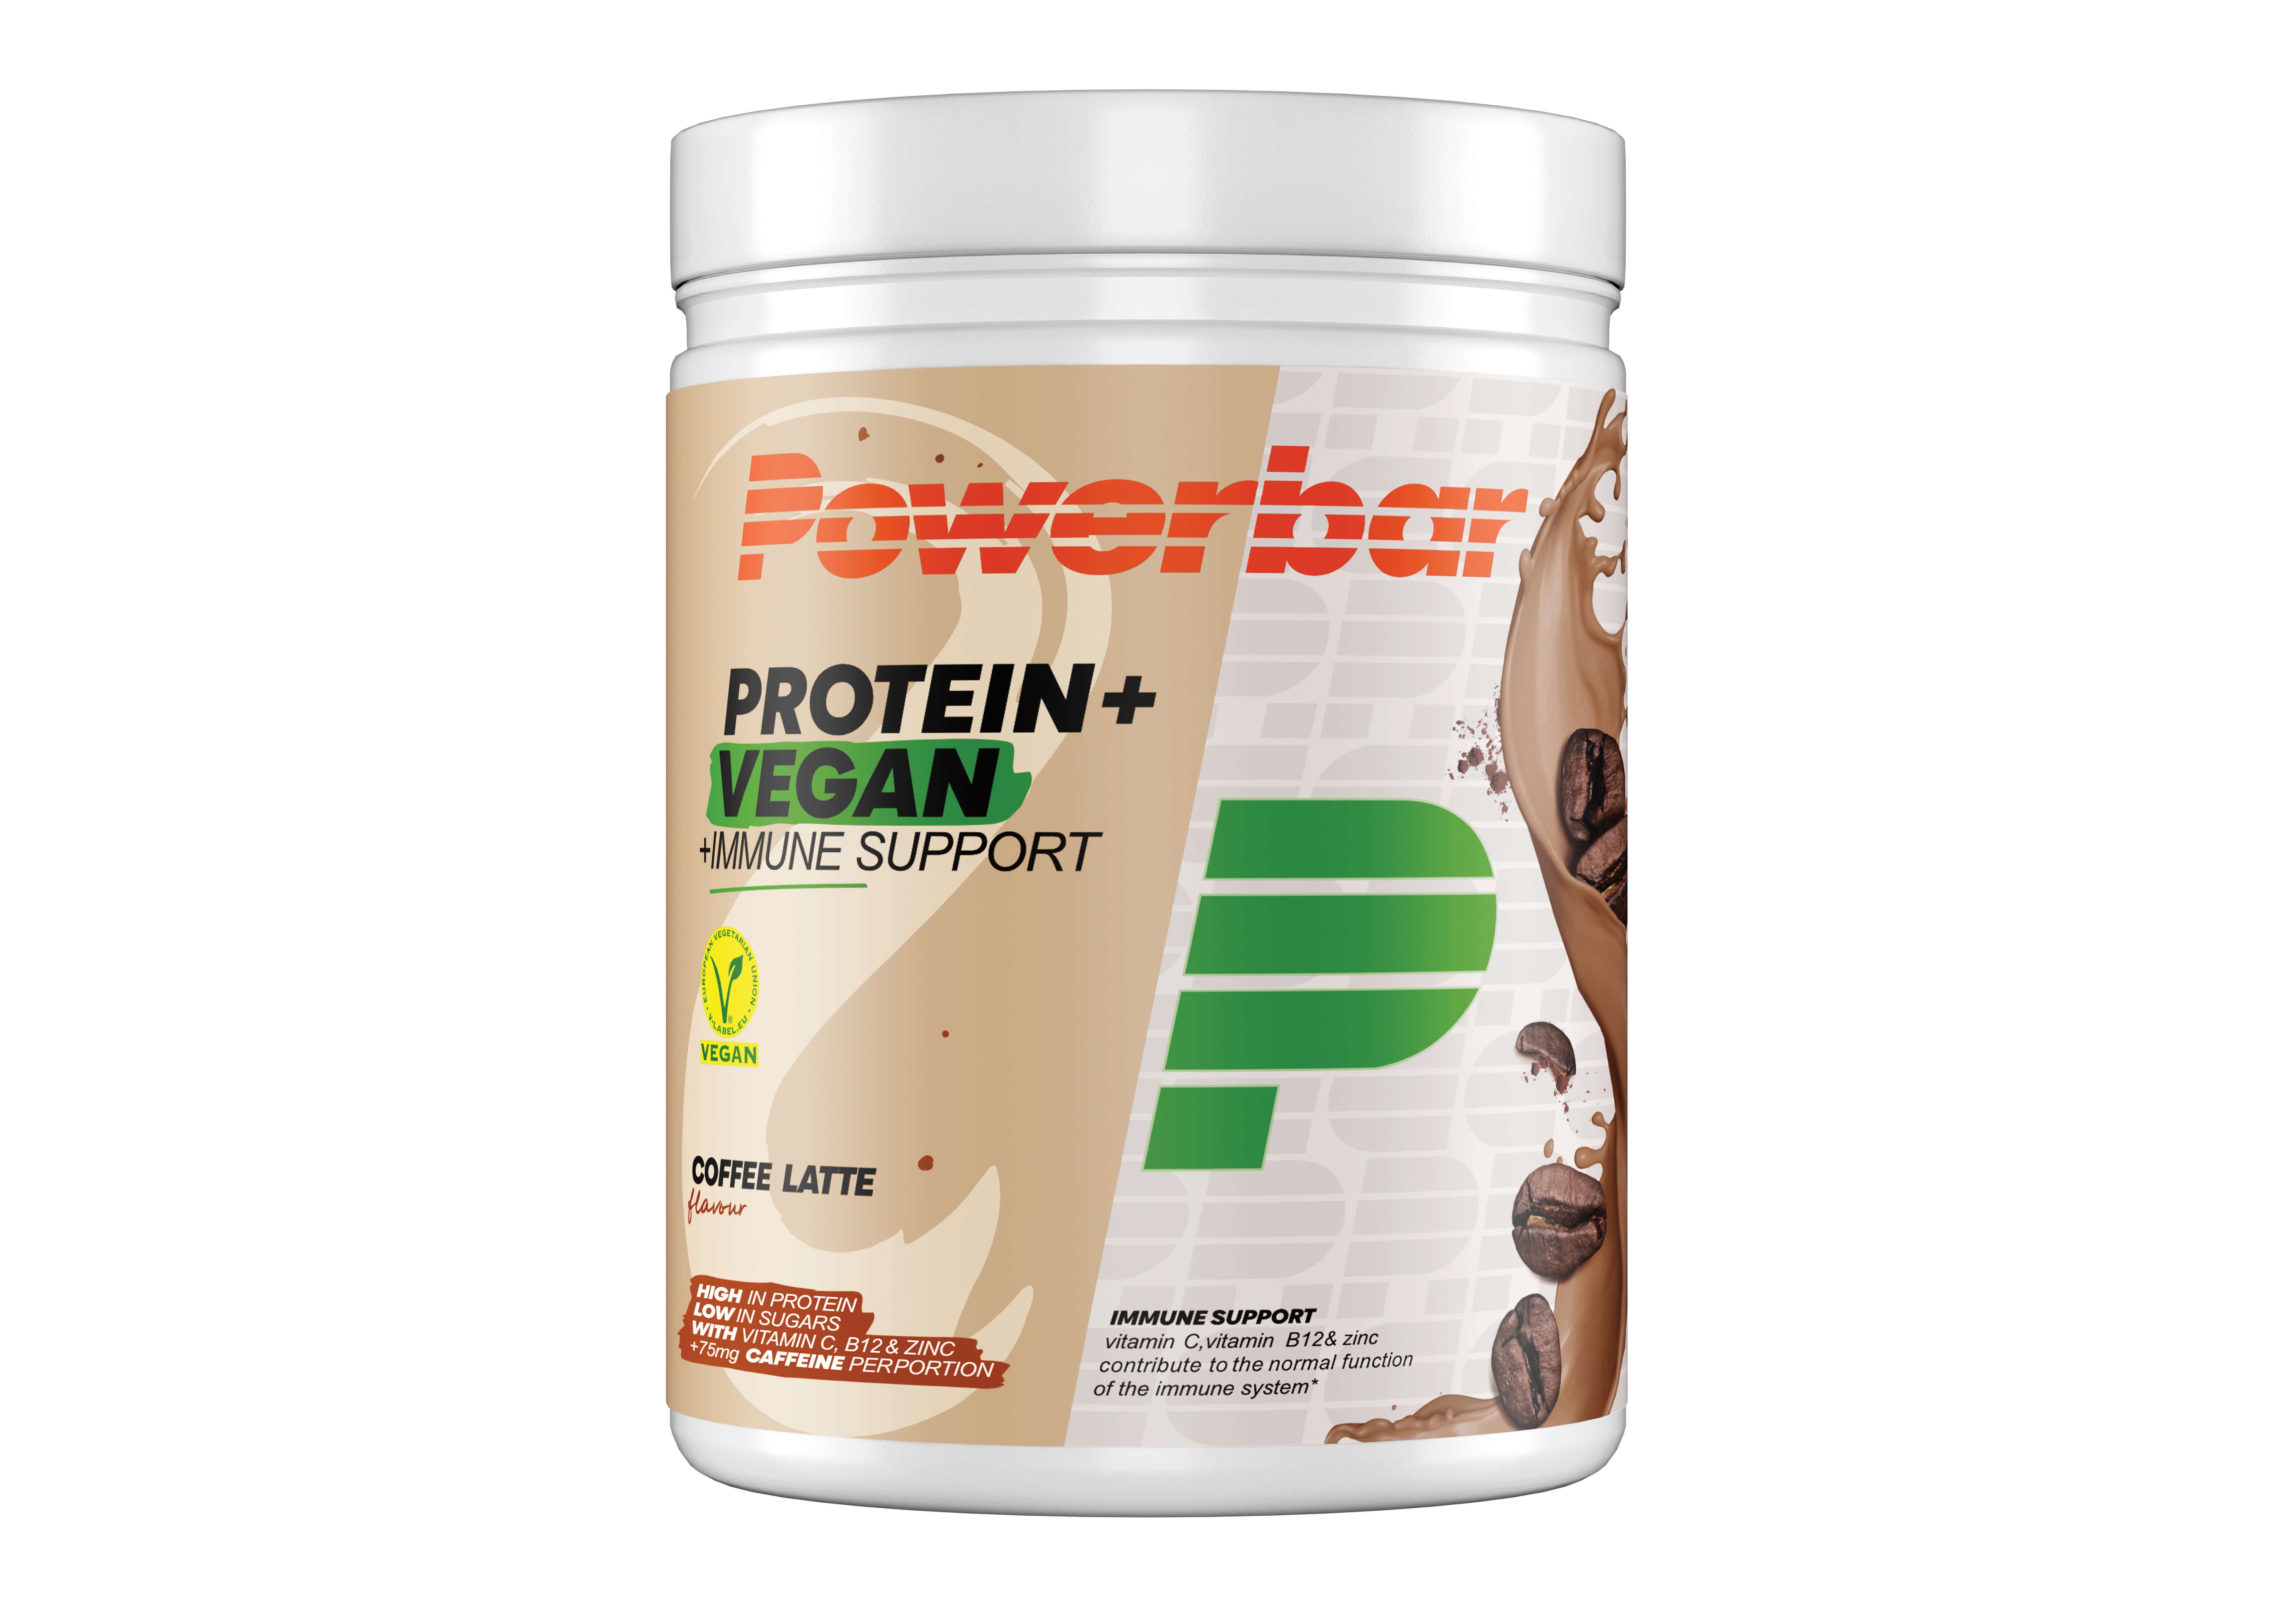 Protein+ Vegan Immune Support Powder